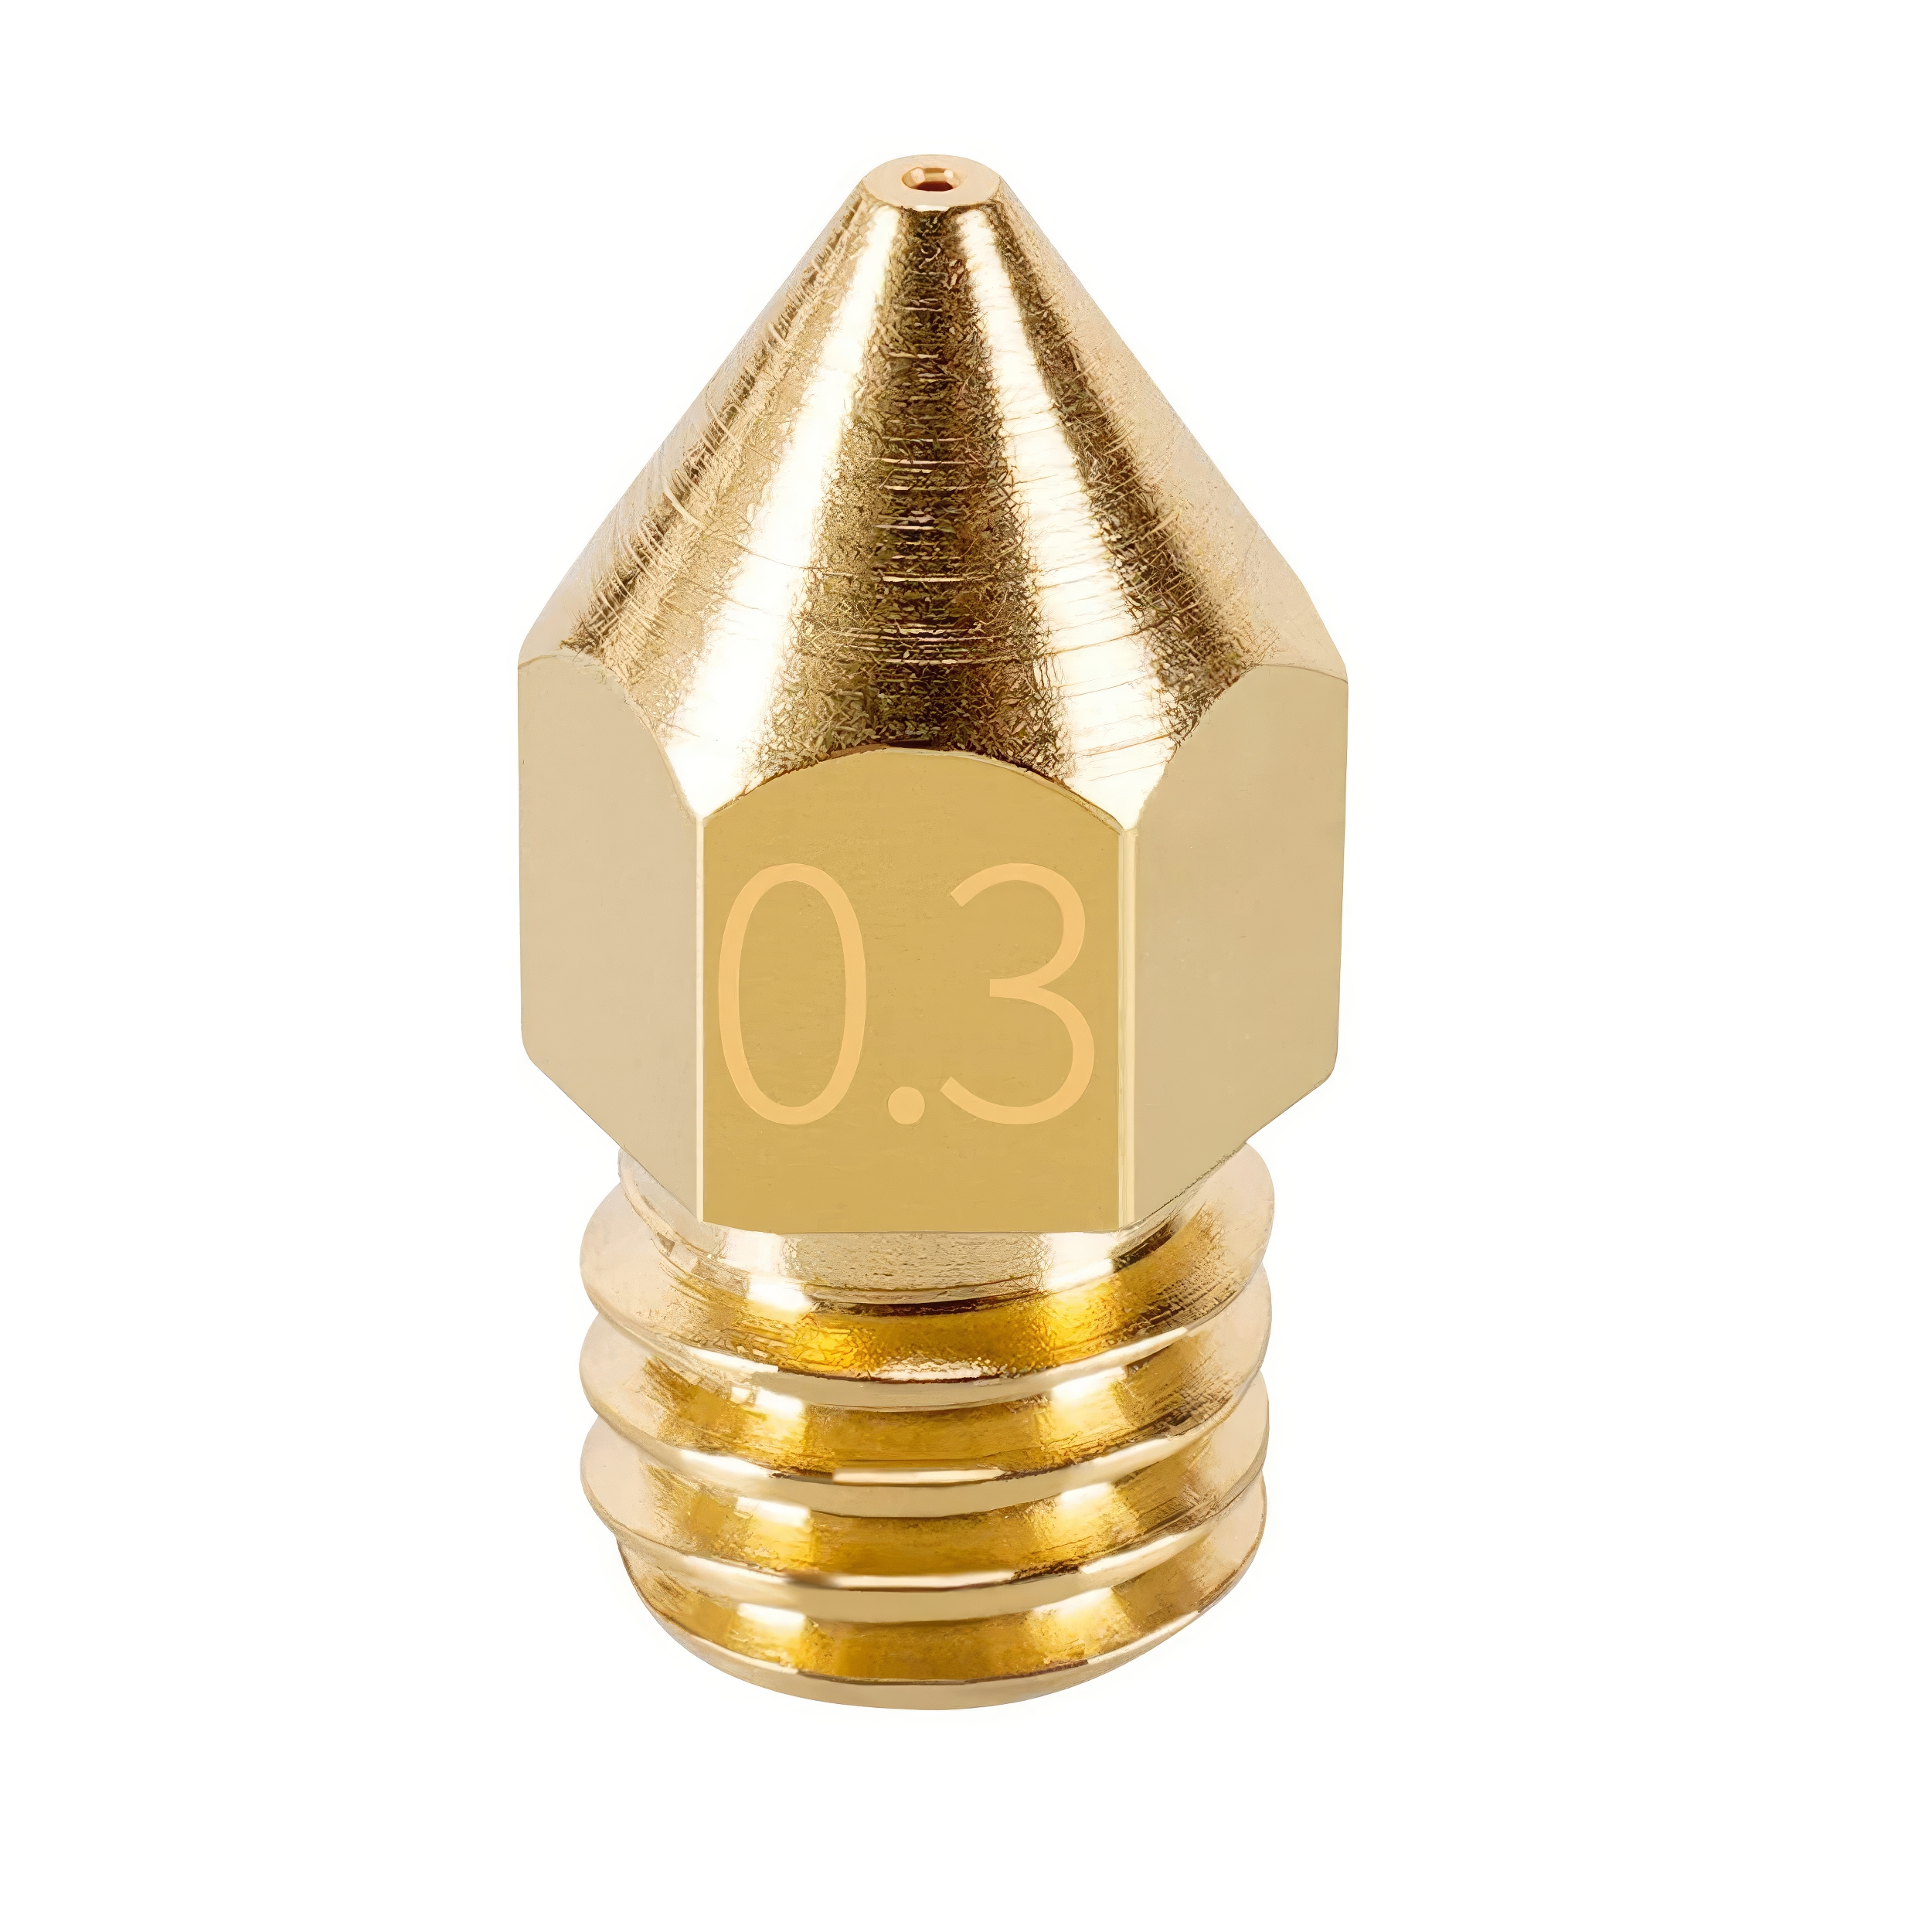 نازل پرینتر سه بعدی مدل MK8 کد brass10